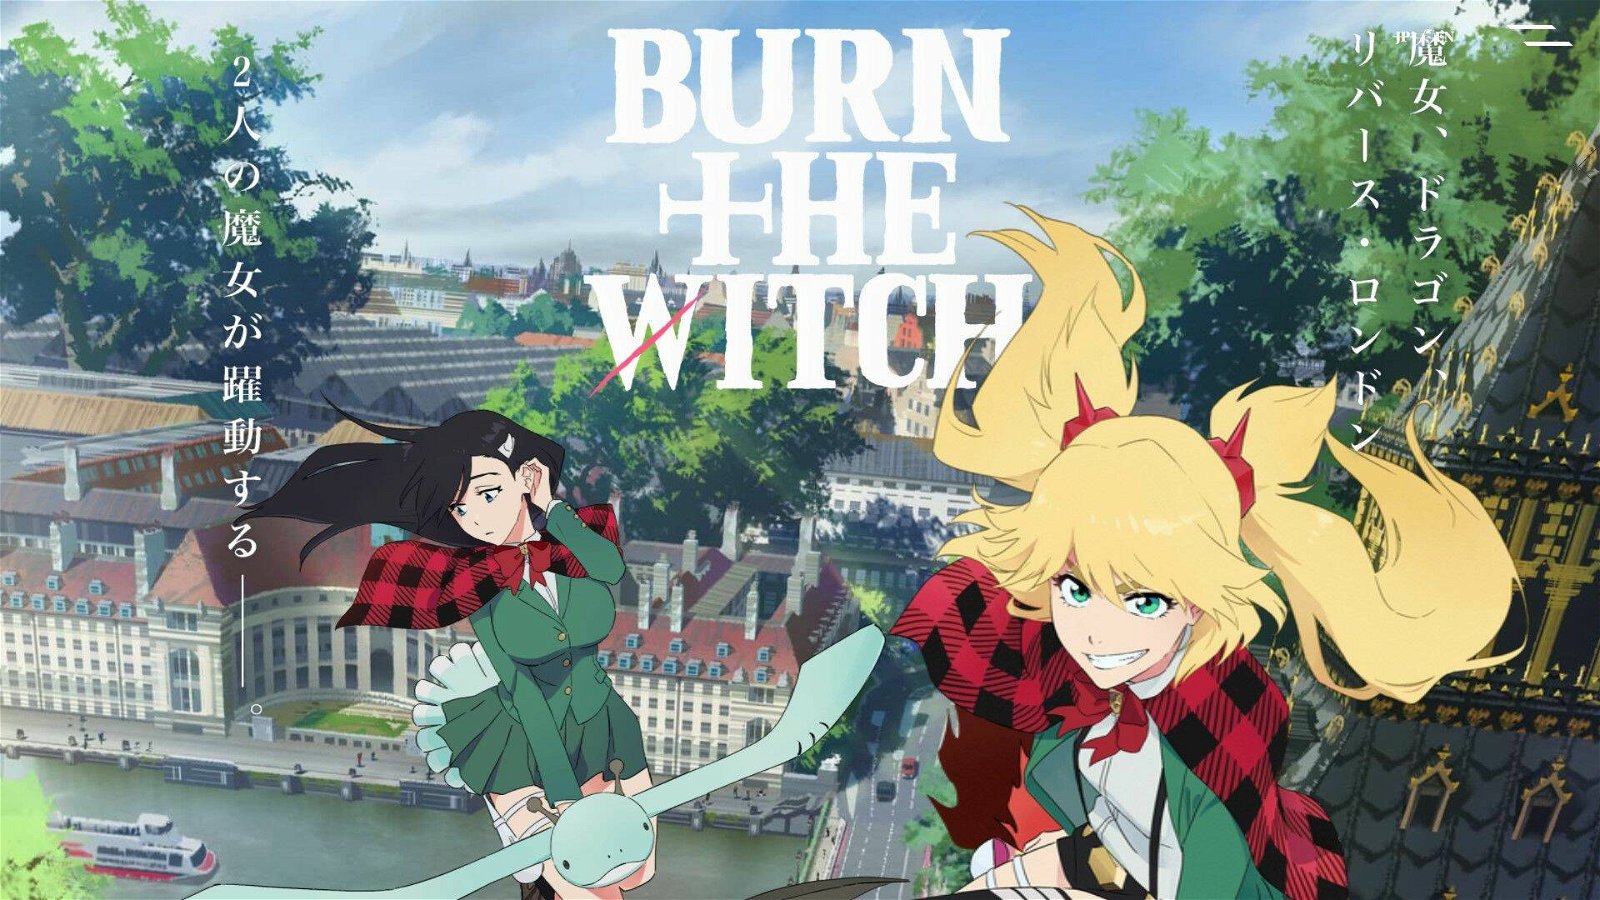 Immagine di Novità per la Stagione 2 del manga di Burn The Witch di Tite Kubo (Bleach)